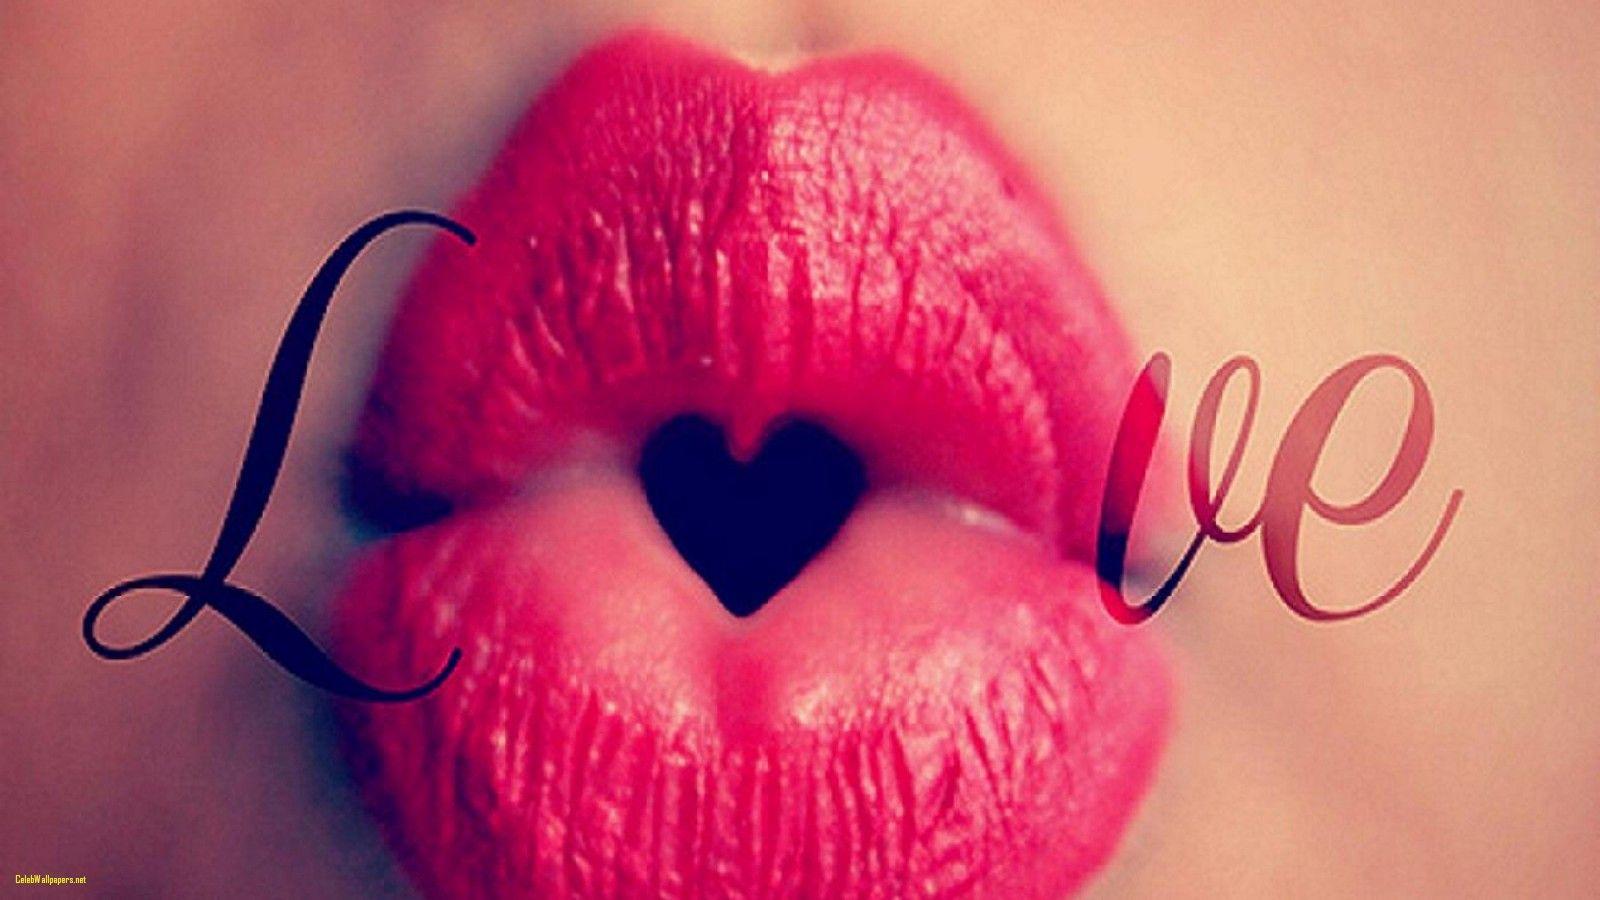 Lovely Lips Kiss Image